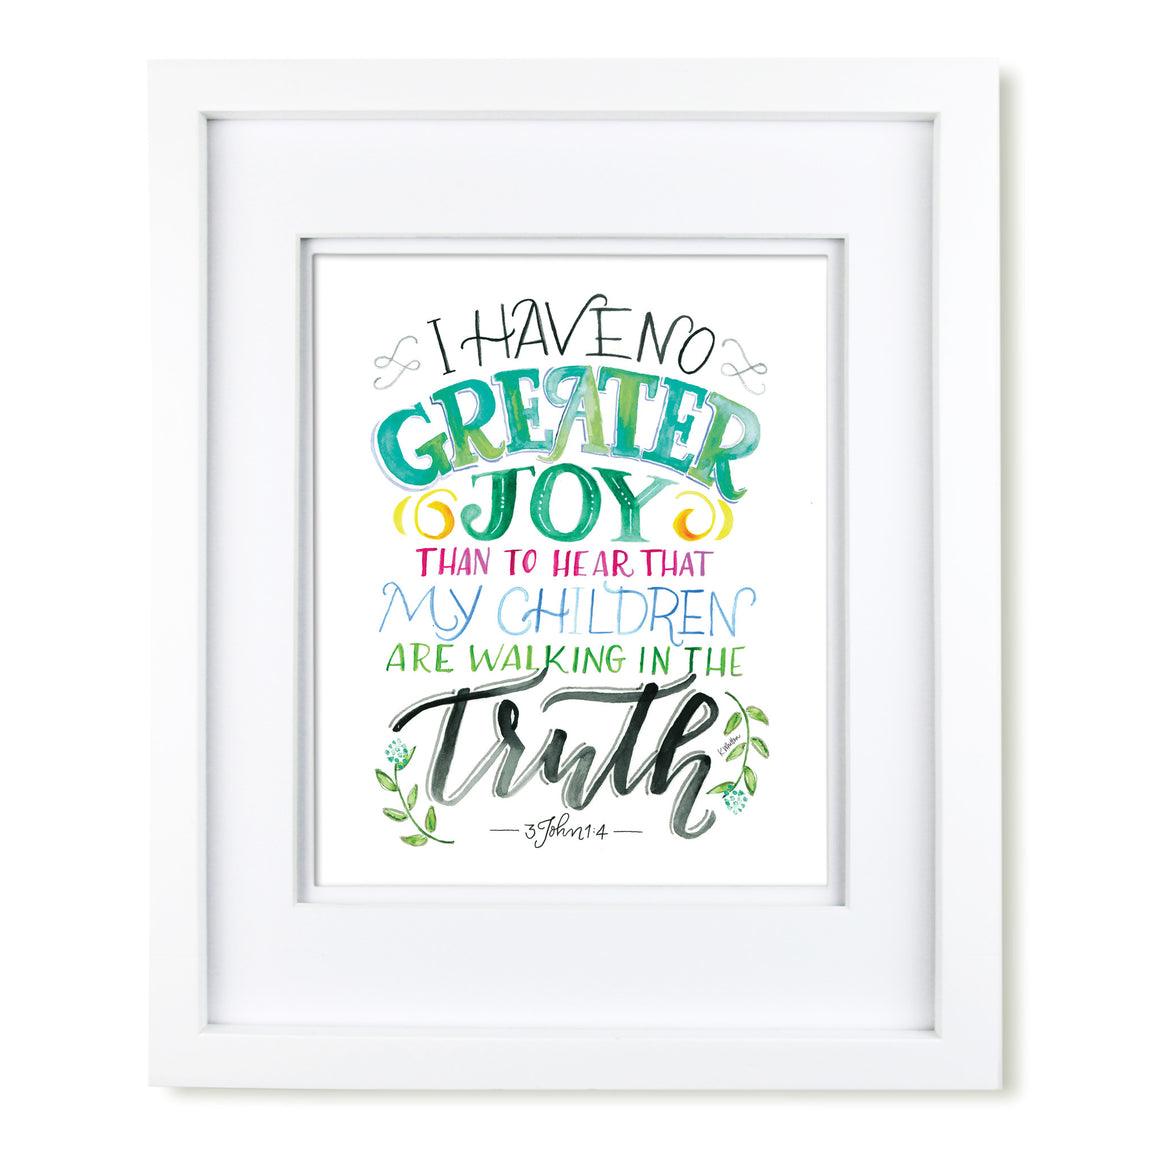 "I Have No Greater Joy" scripture art print